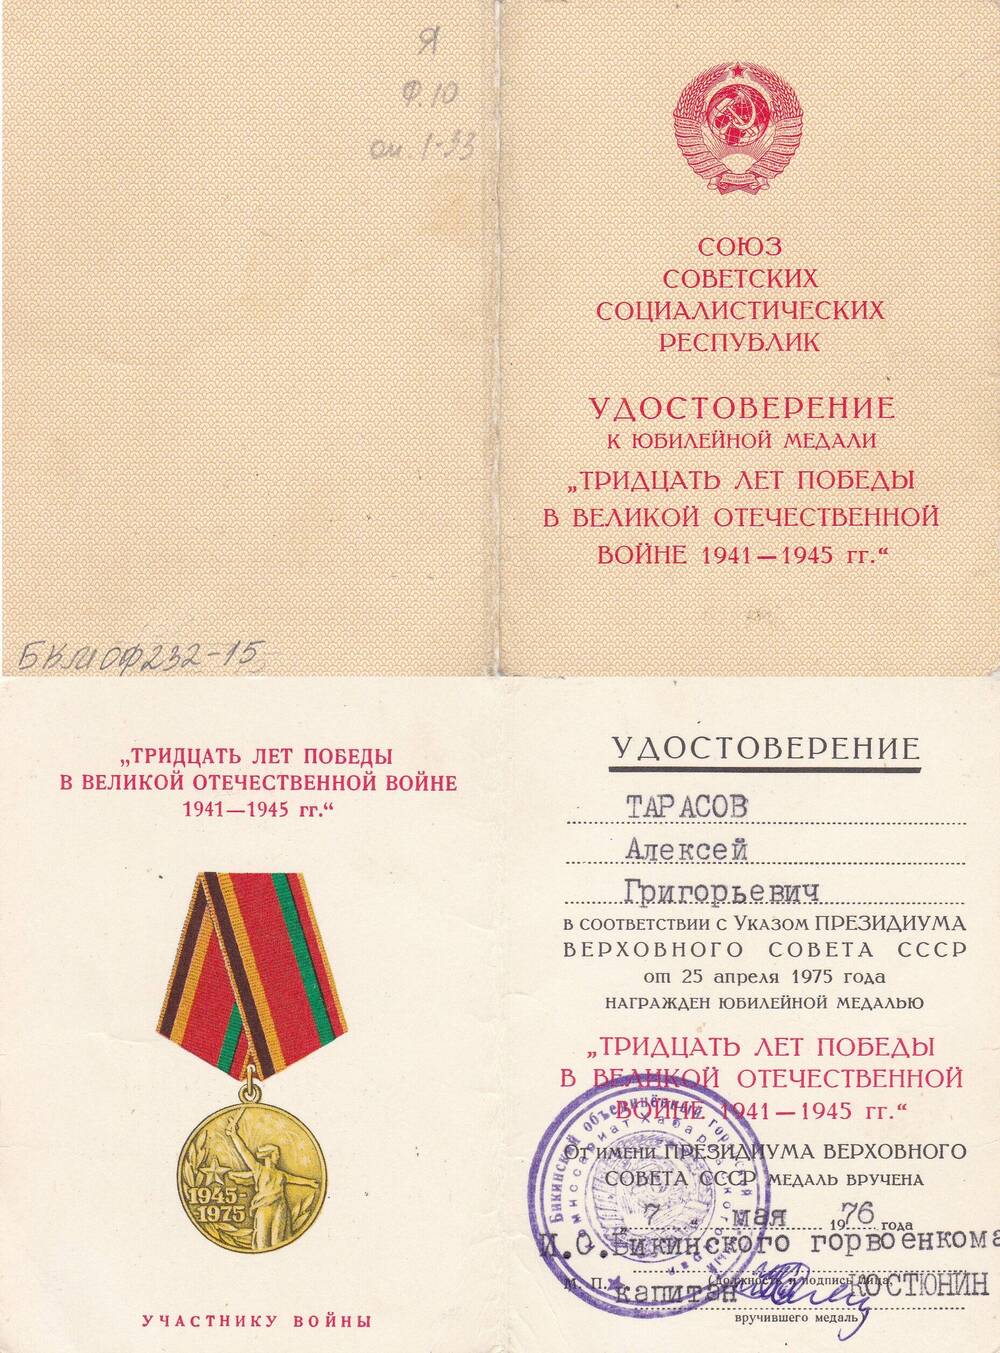 Удостоверение к юбилейной медали 30 лет Победы в ВОВ 1941-1945 гг. Тарасова А.Г. ветерана ВОВ